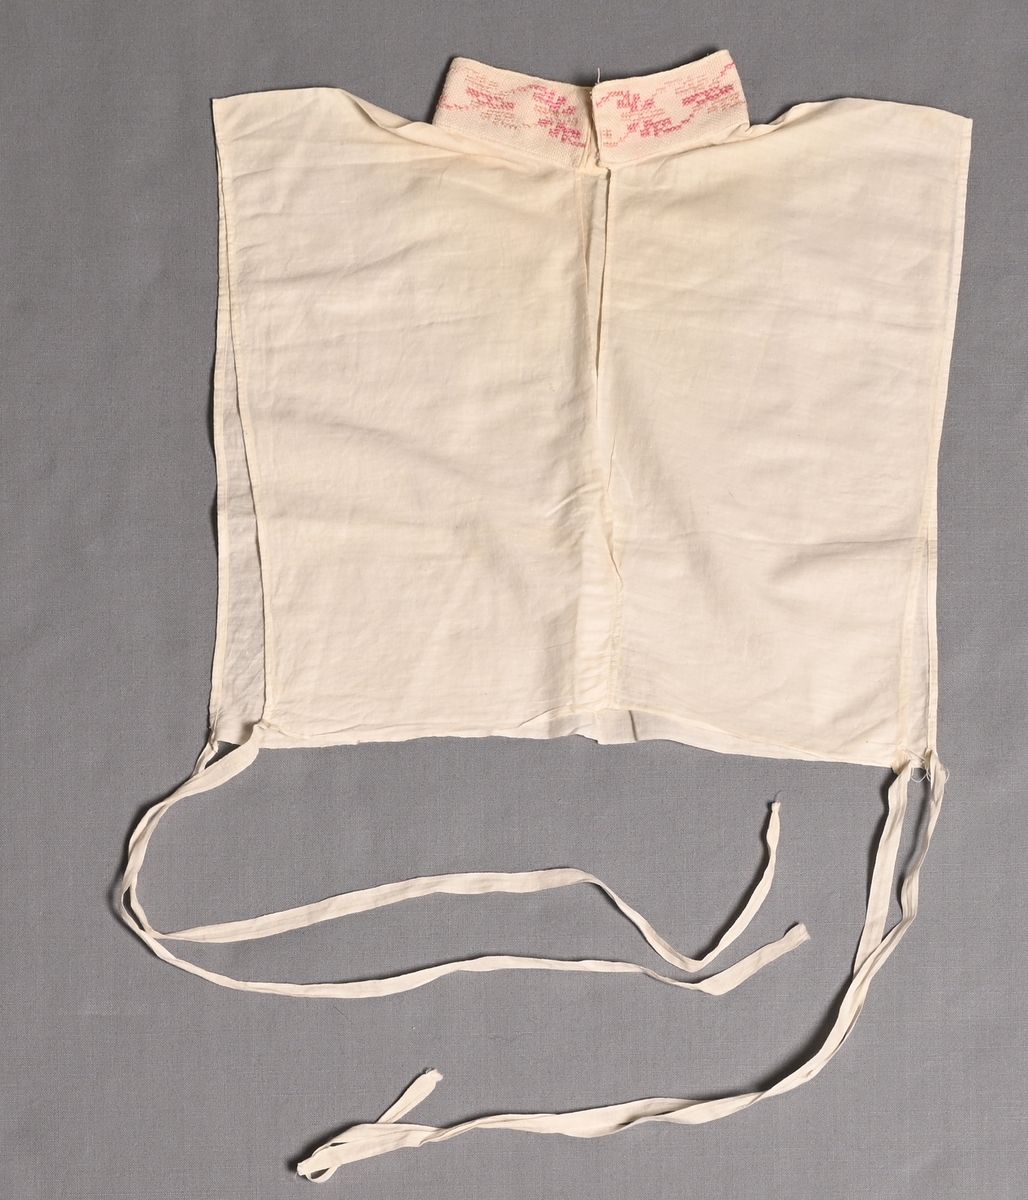 Isättning till grönländsk festdräkt för kvinnor.
Löst skjortbröst av vitt bomullstyg med liten ståkrage med rosa-blekrosa korsstygnsbroderi på aidaväv. Knyts med bomullsband i båda sidorna.